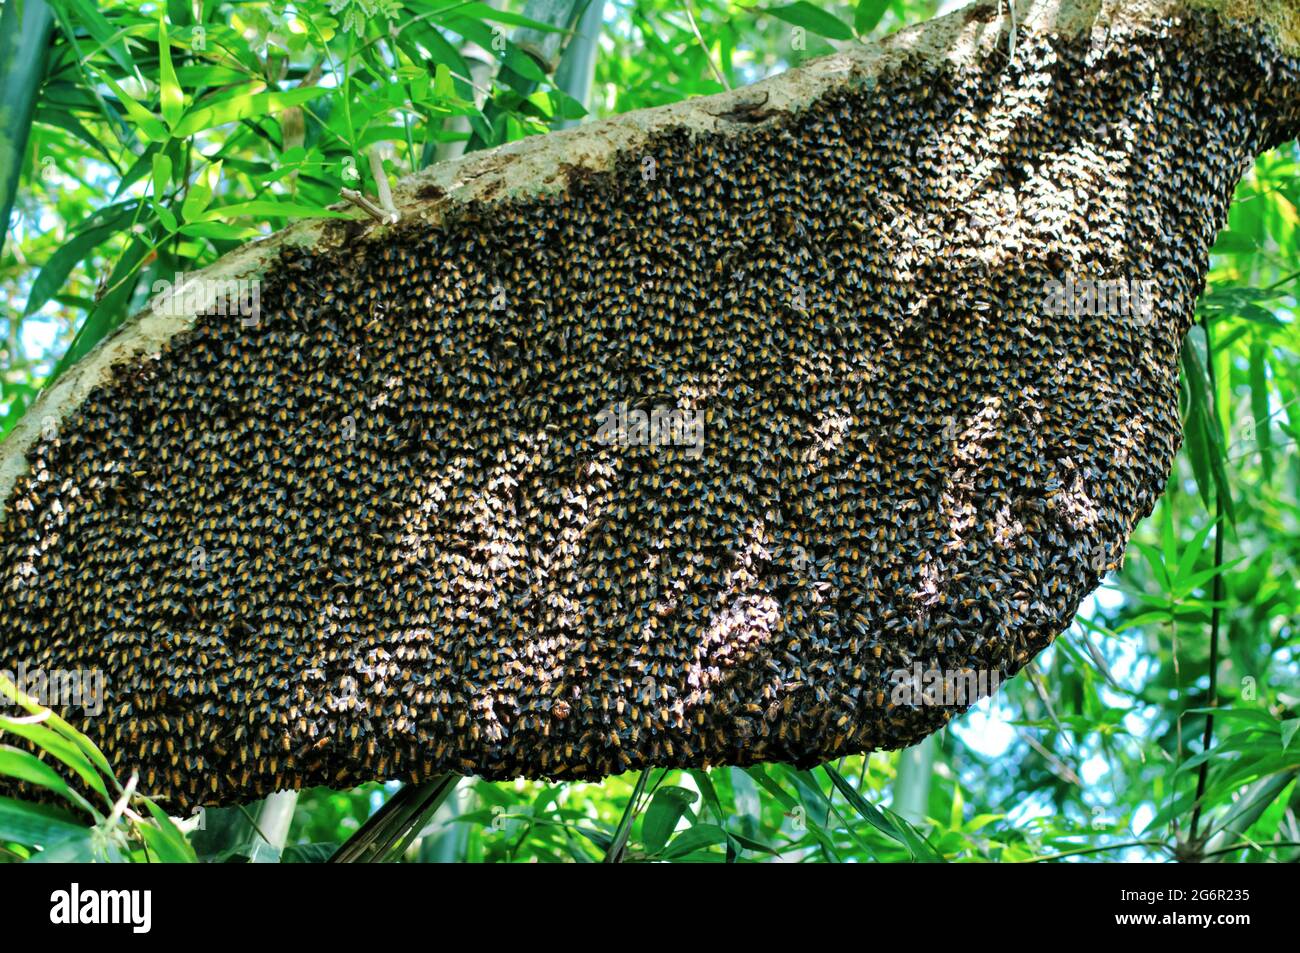 Ein einziger großer riesiger Honigbienenkamm hängt unter Baumzweigen, die teilweise von Arbeitsbienen bedeckt sind. Honigbienen-Schwarm, der in der Natur am Baum hängt. Stockfoto